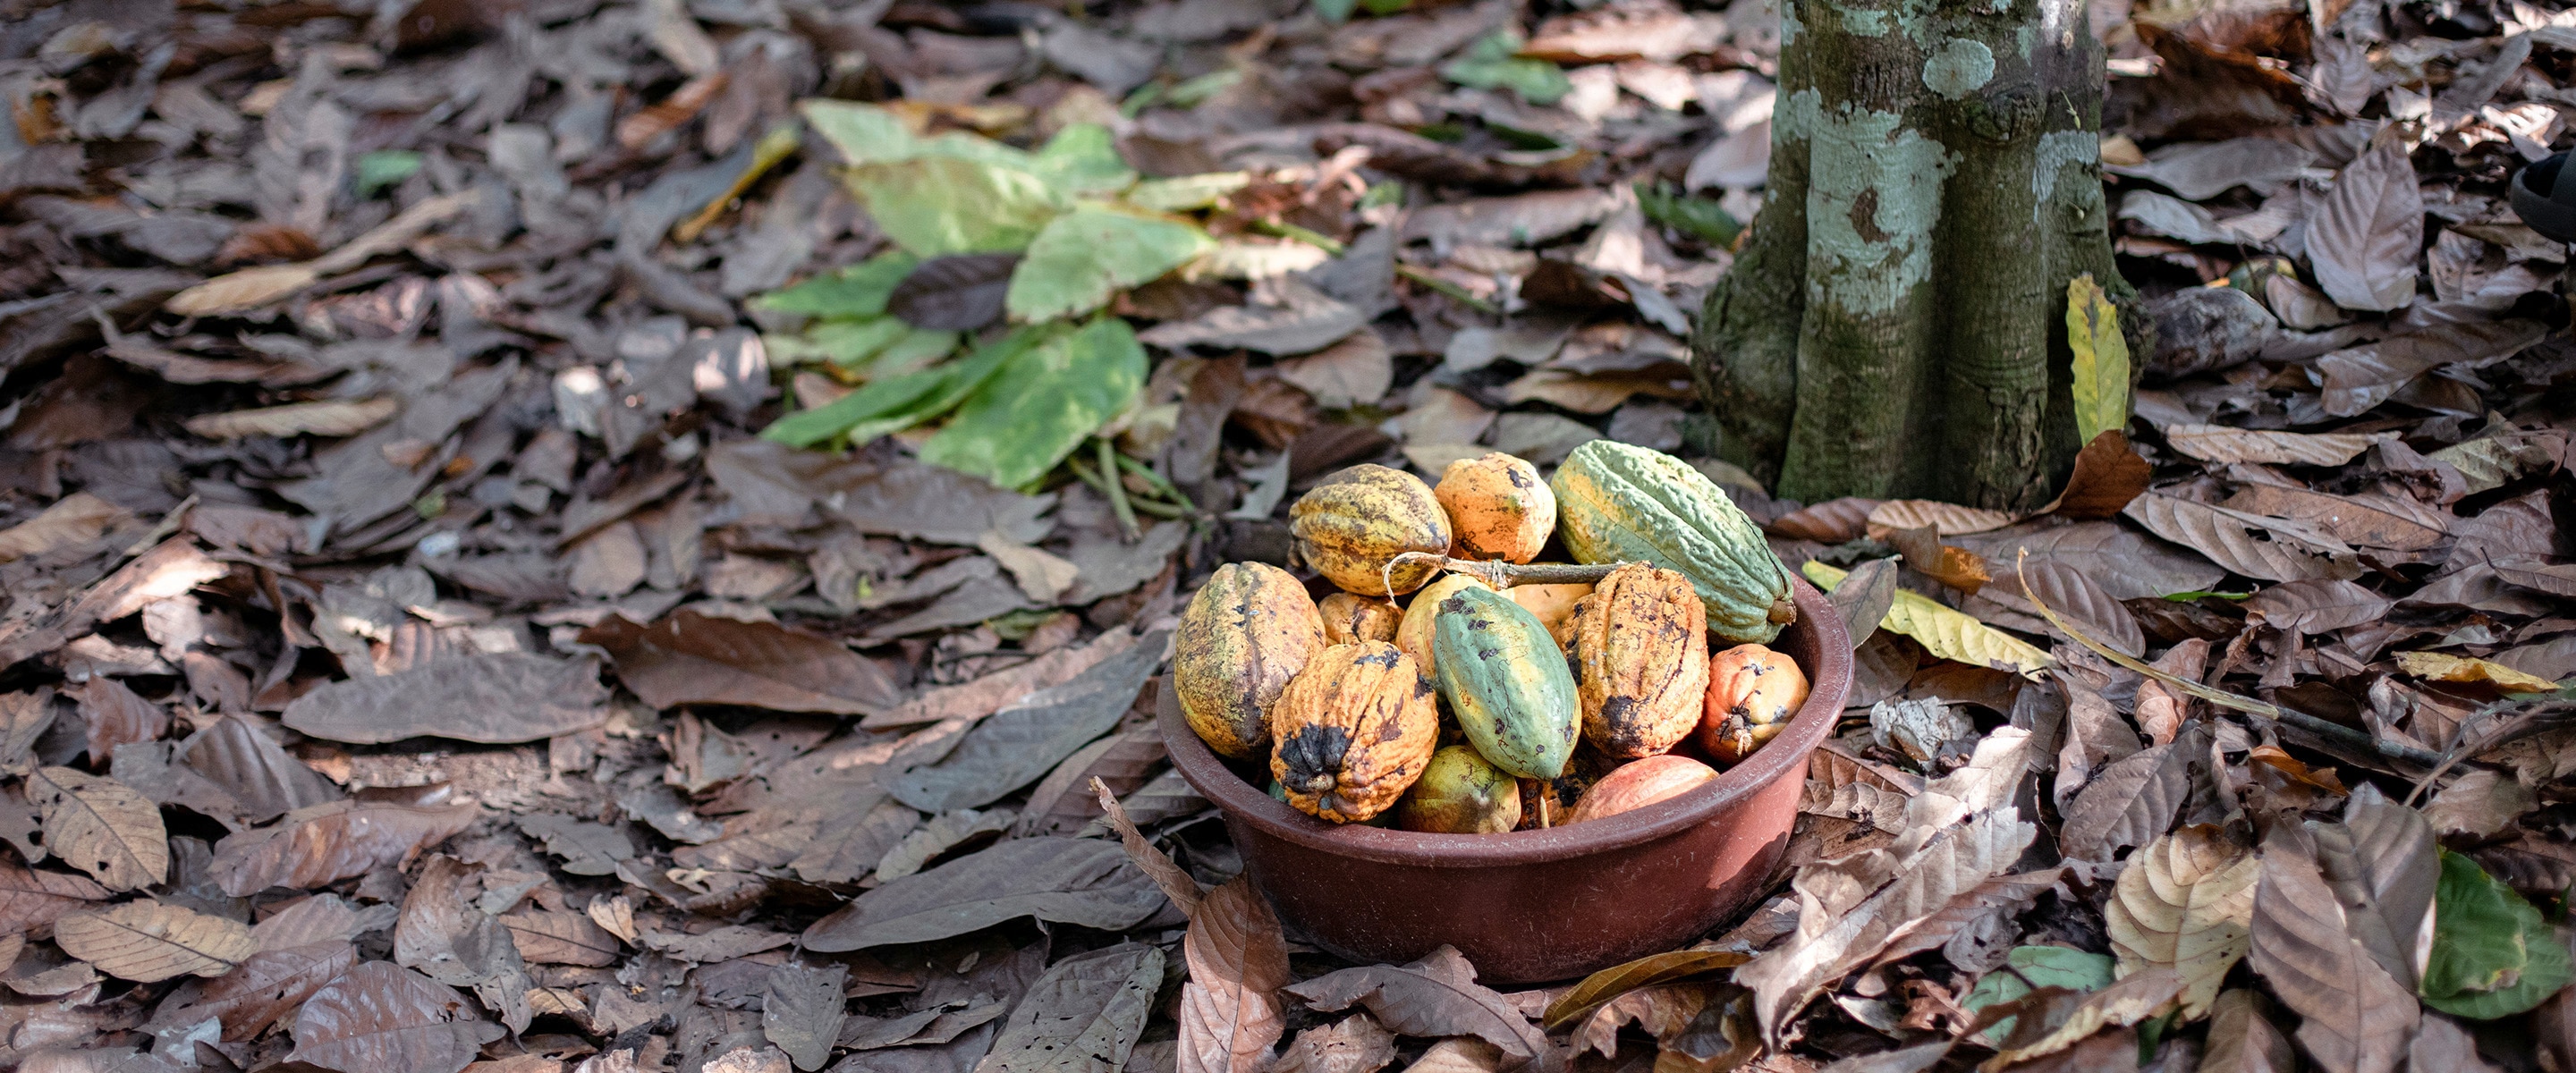 Gran cuenco redondo de plástico lleno de vainas de cacao, descansando sobre hojas en un bosque de plantación de cacao